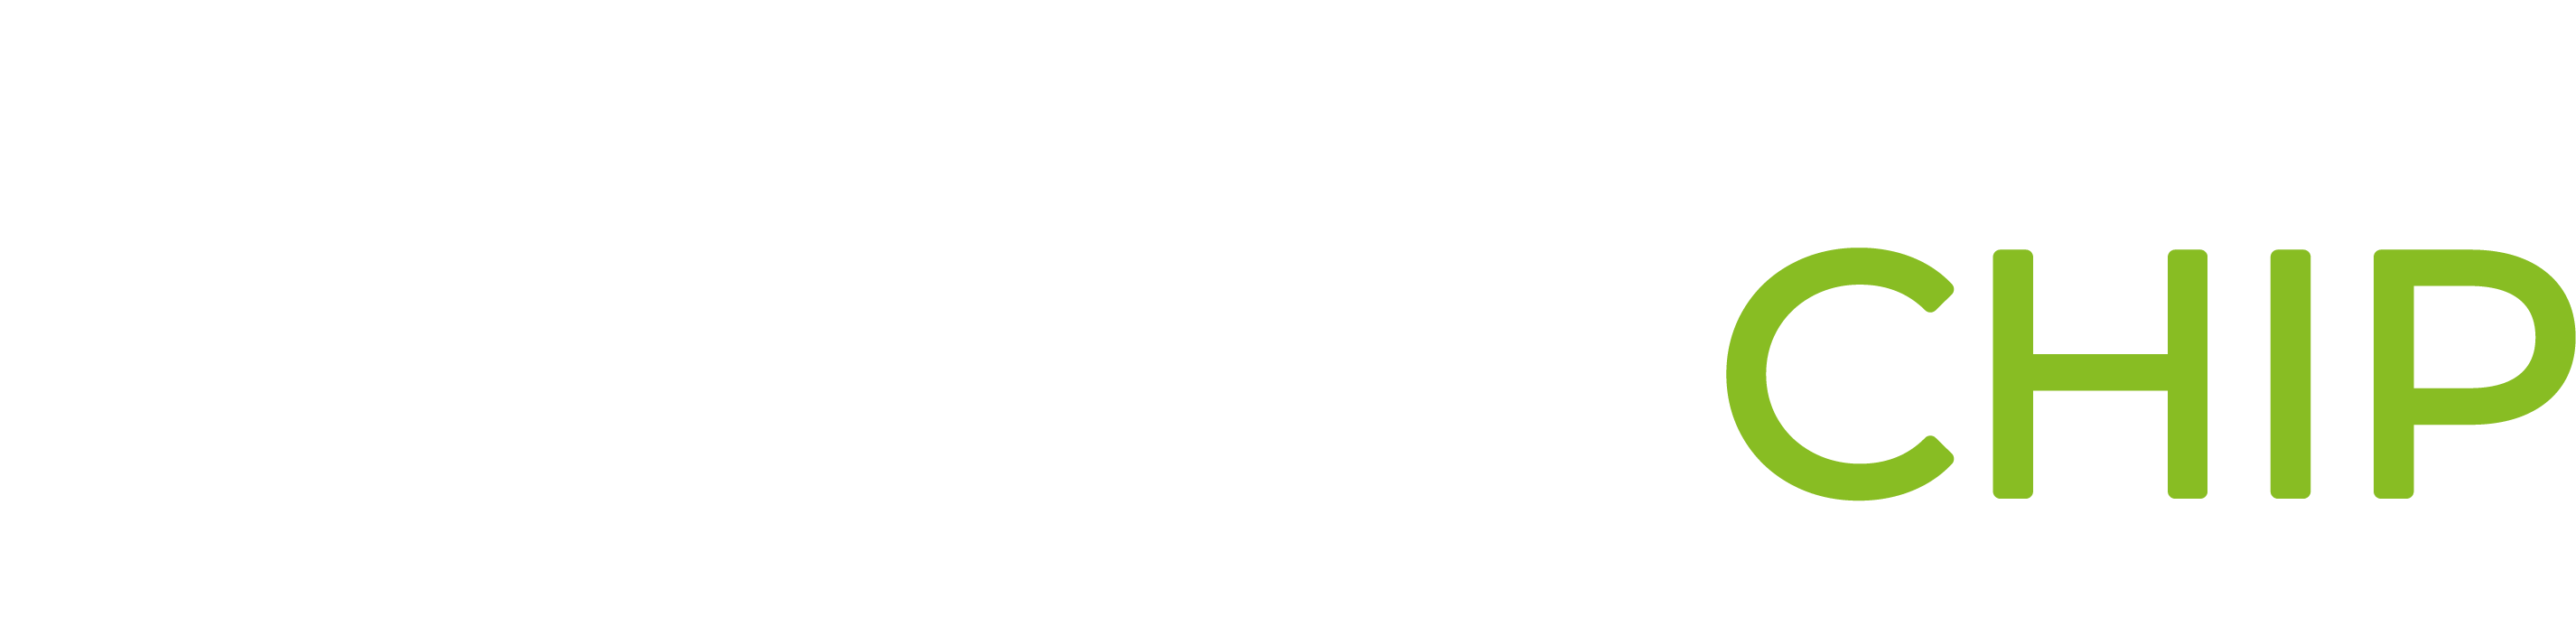 01_3-ironchip_logo_articulación horizontal_negativo-1